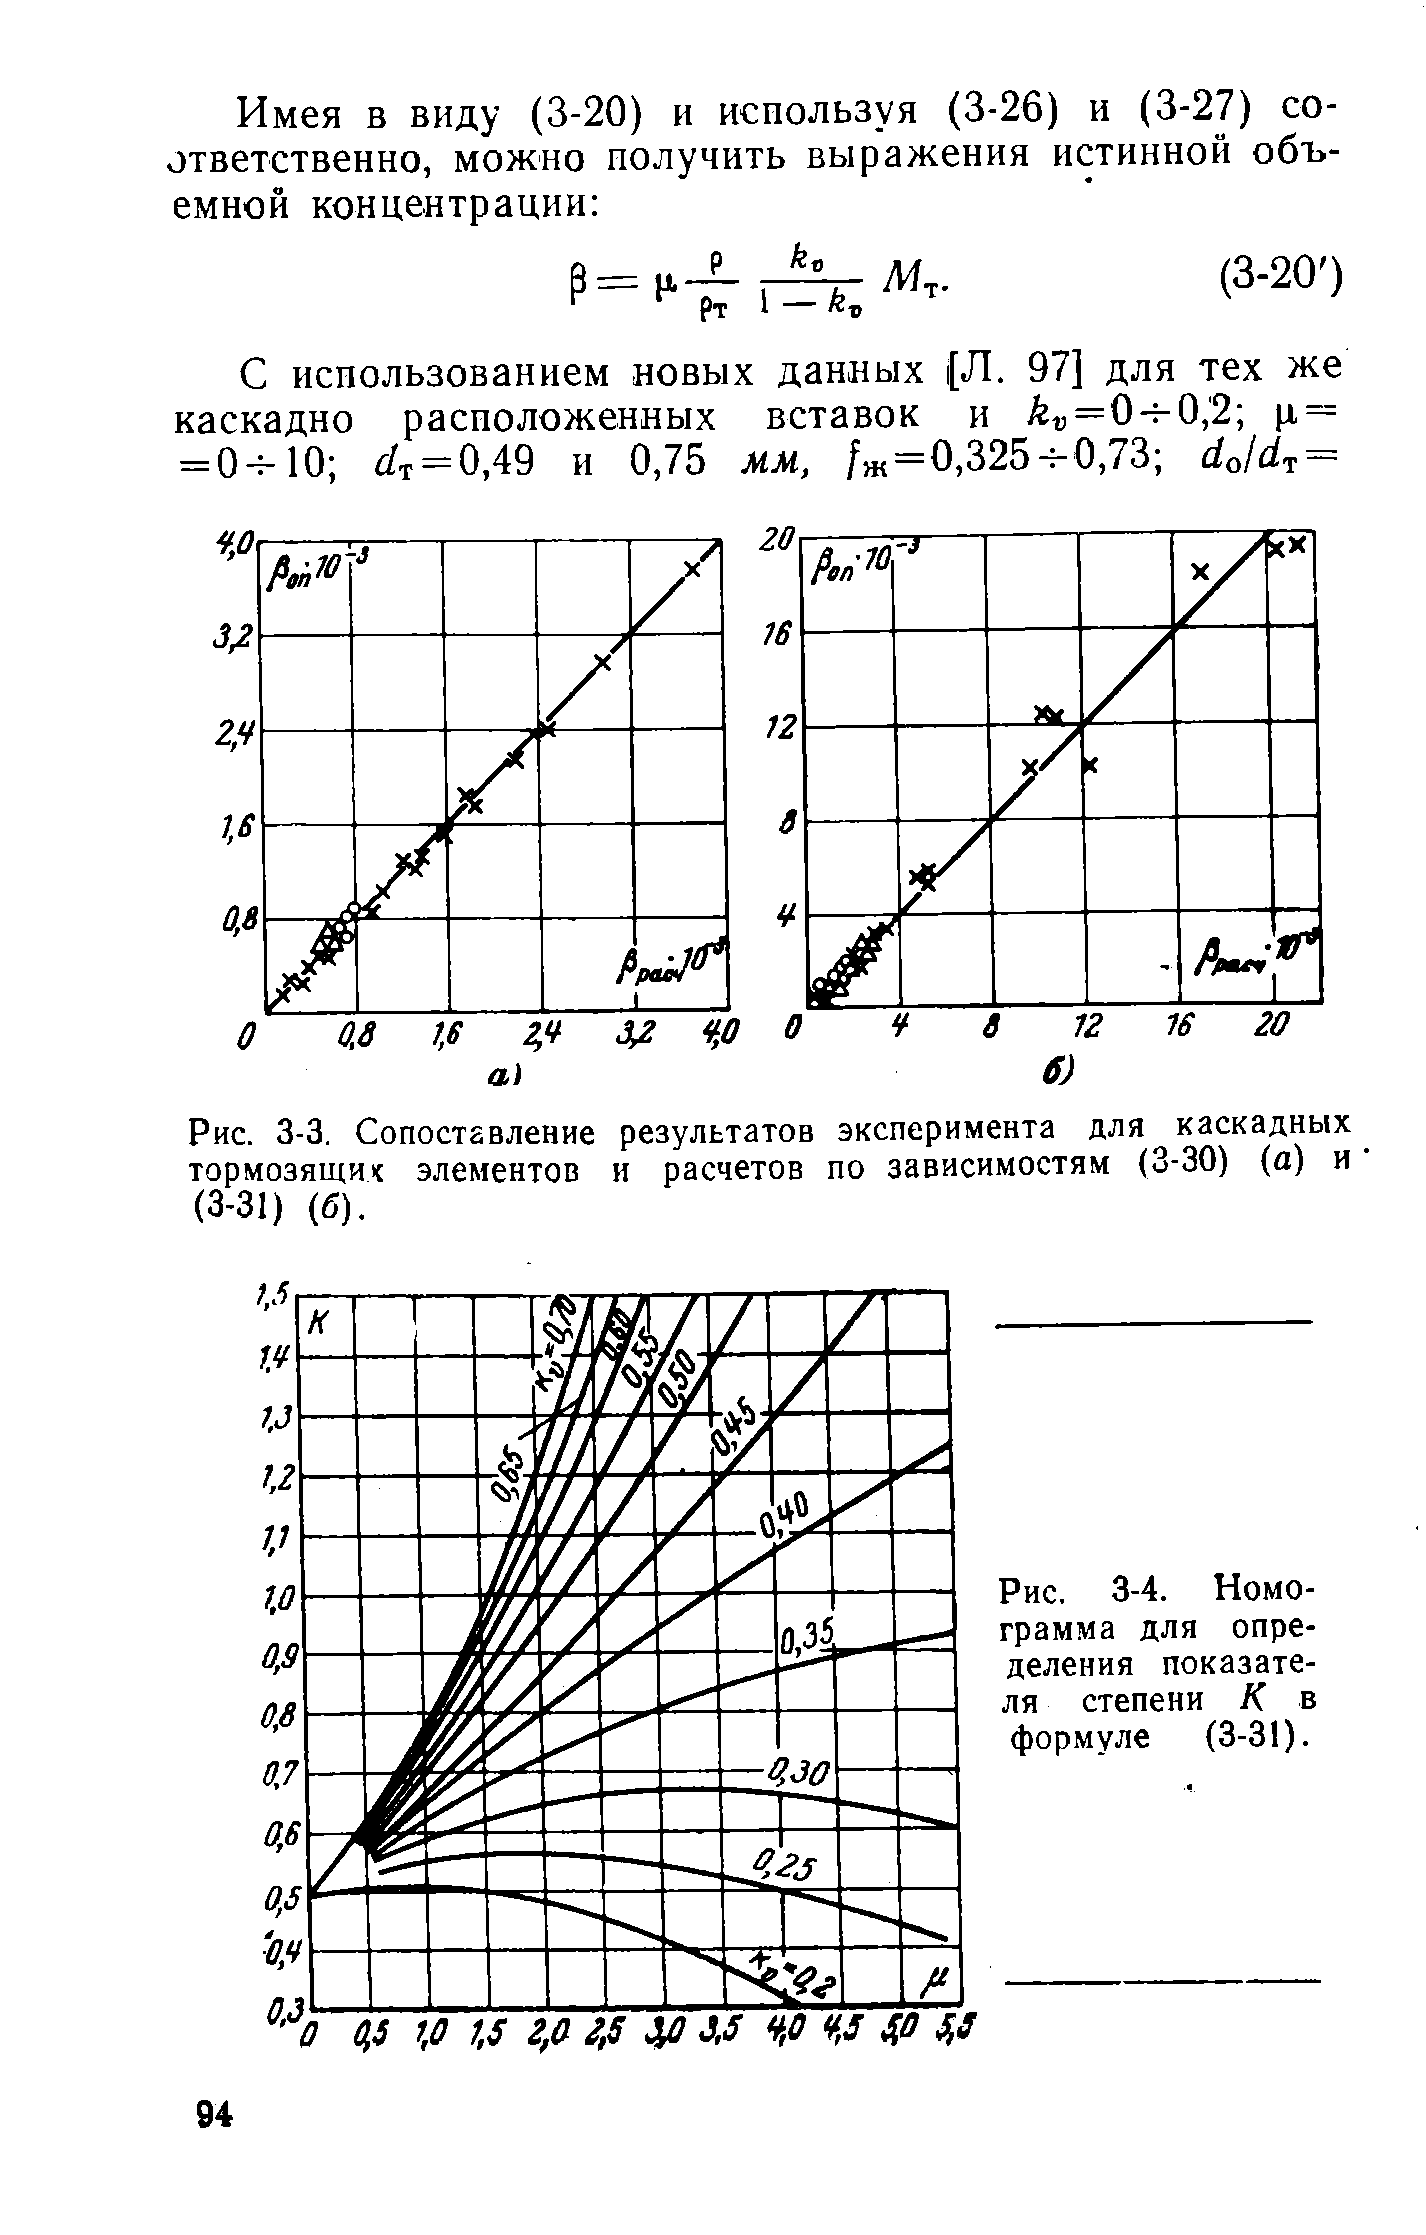 Рис. 3-4. Номограмма для определения показателя степени К в формуле (3-31).
